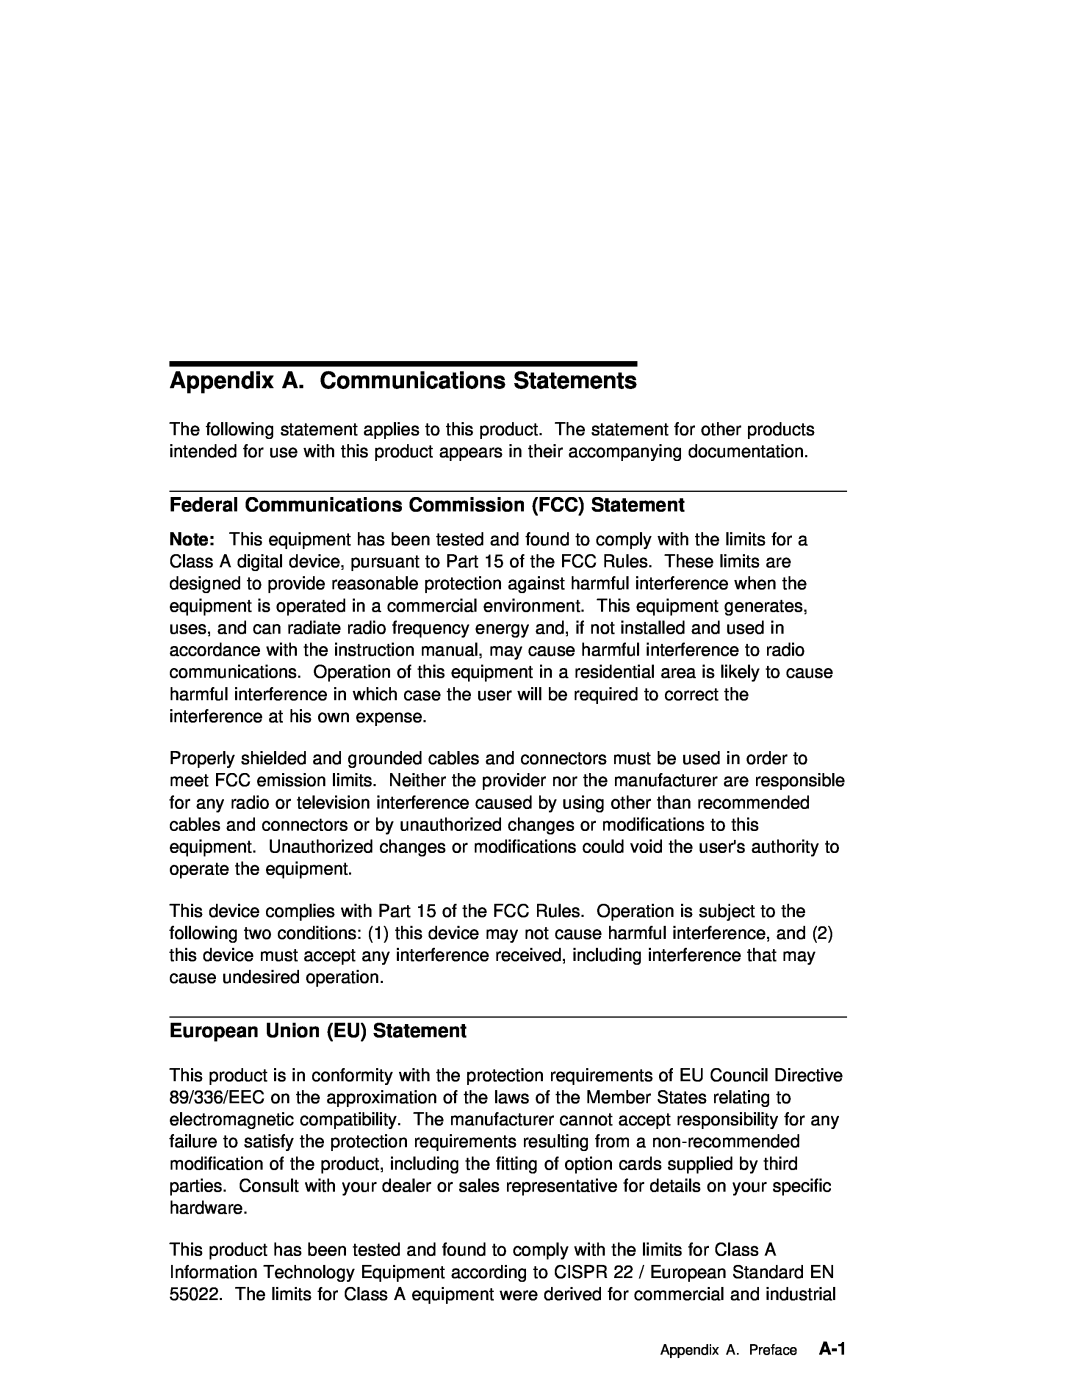 IBM ARTIC960RxD manual European Union EU Statement, Appendix A 